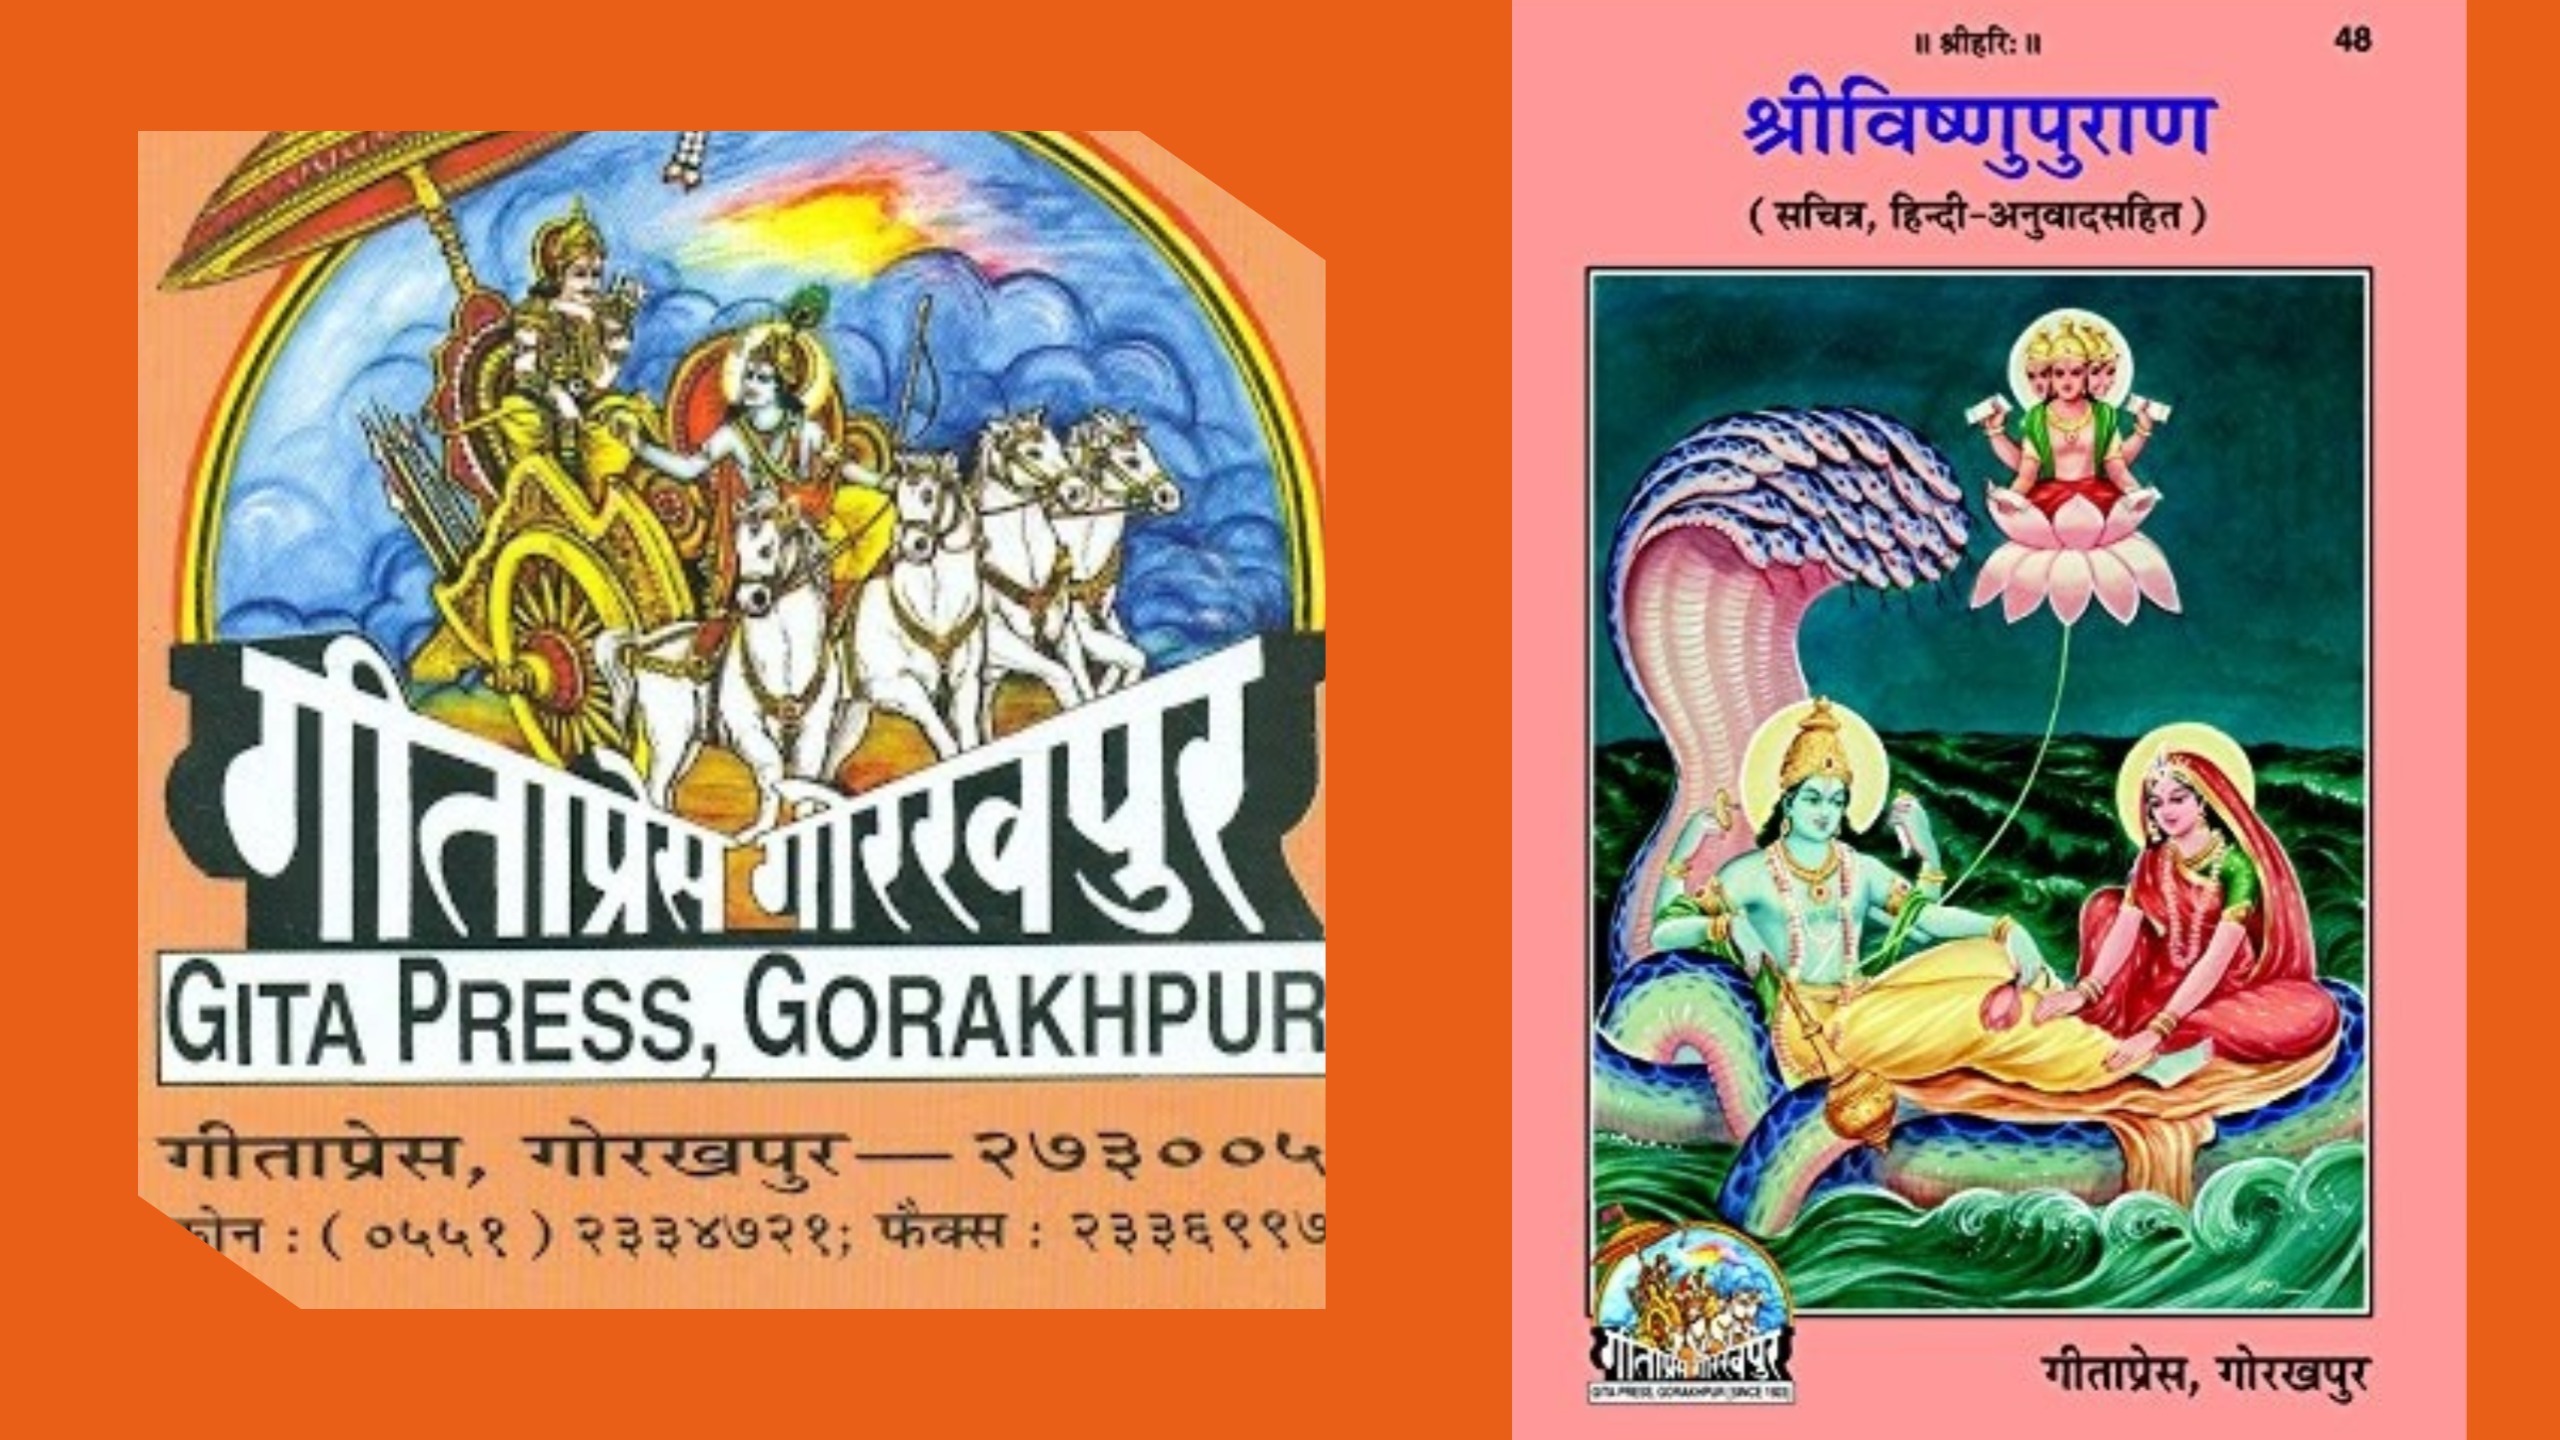 Vishnu Puran - Gita Press Gorakhpur